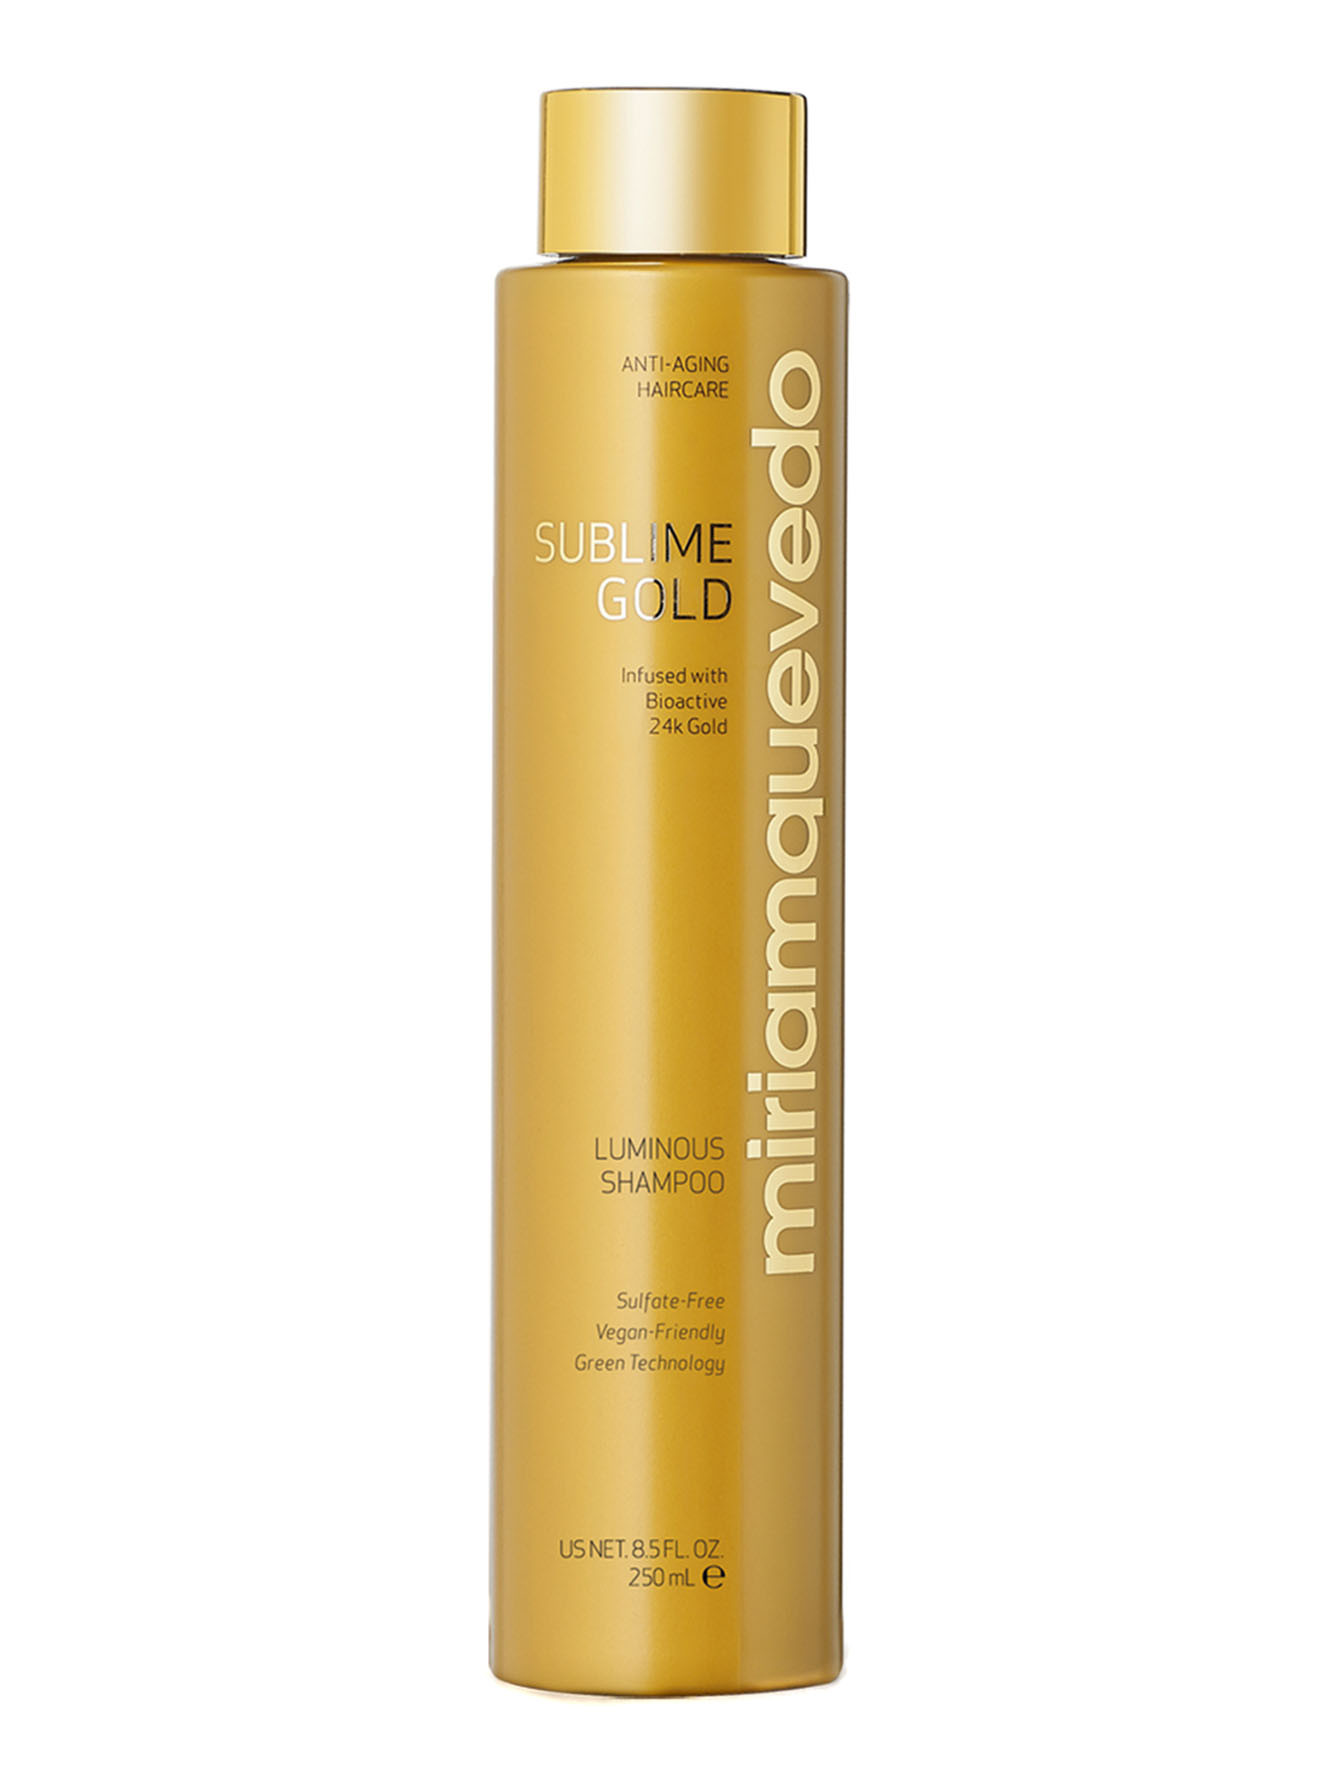 Шампунь для сияния волос Sublime Gold Luminous Shampoo, 250 мл - Общий вид